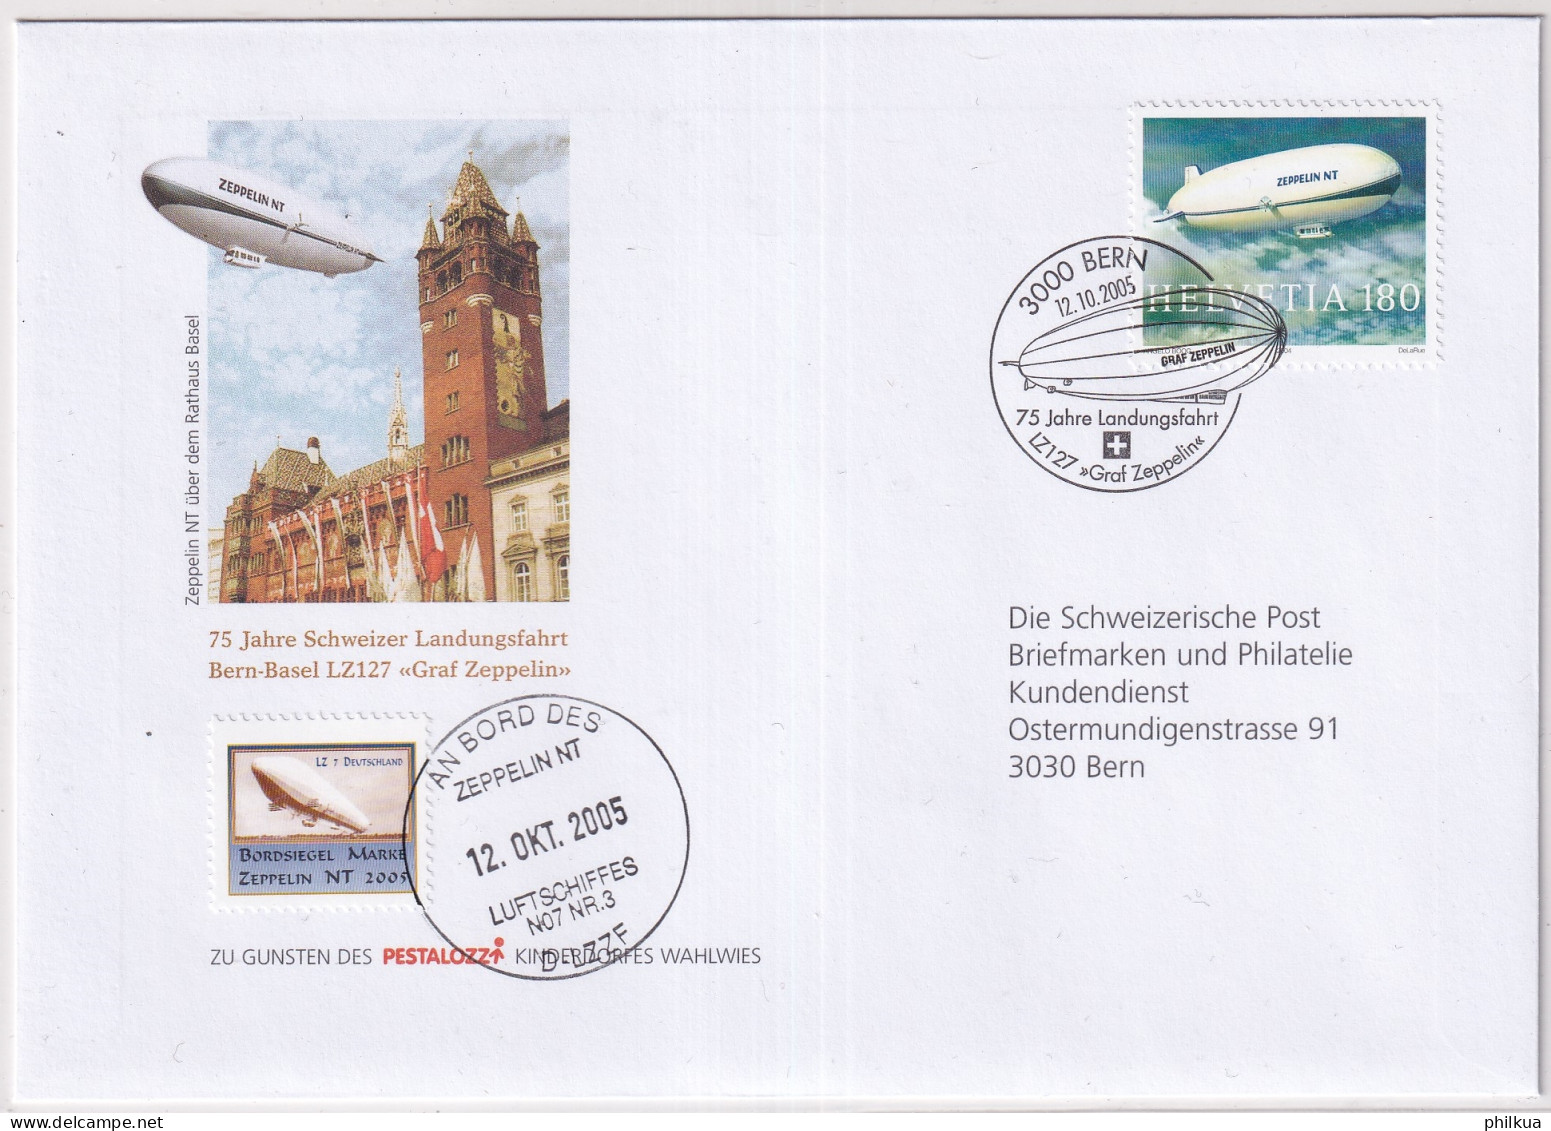 1121 / Michel 1879 Auf Illustriertem  Brief Mit Sonderstempel An Bprd Des Zeppelin NT Mit Vignette - Lettres & Documents